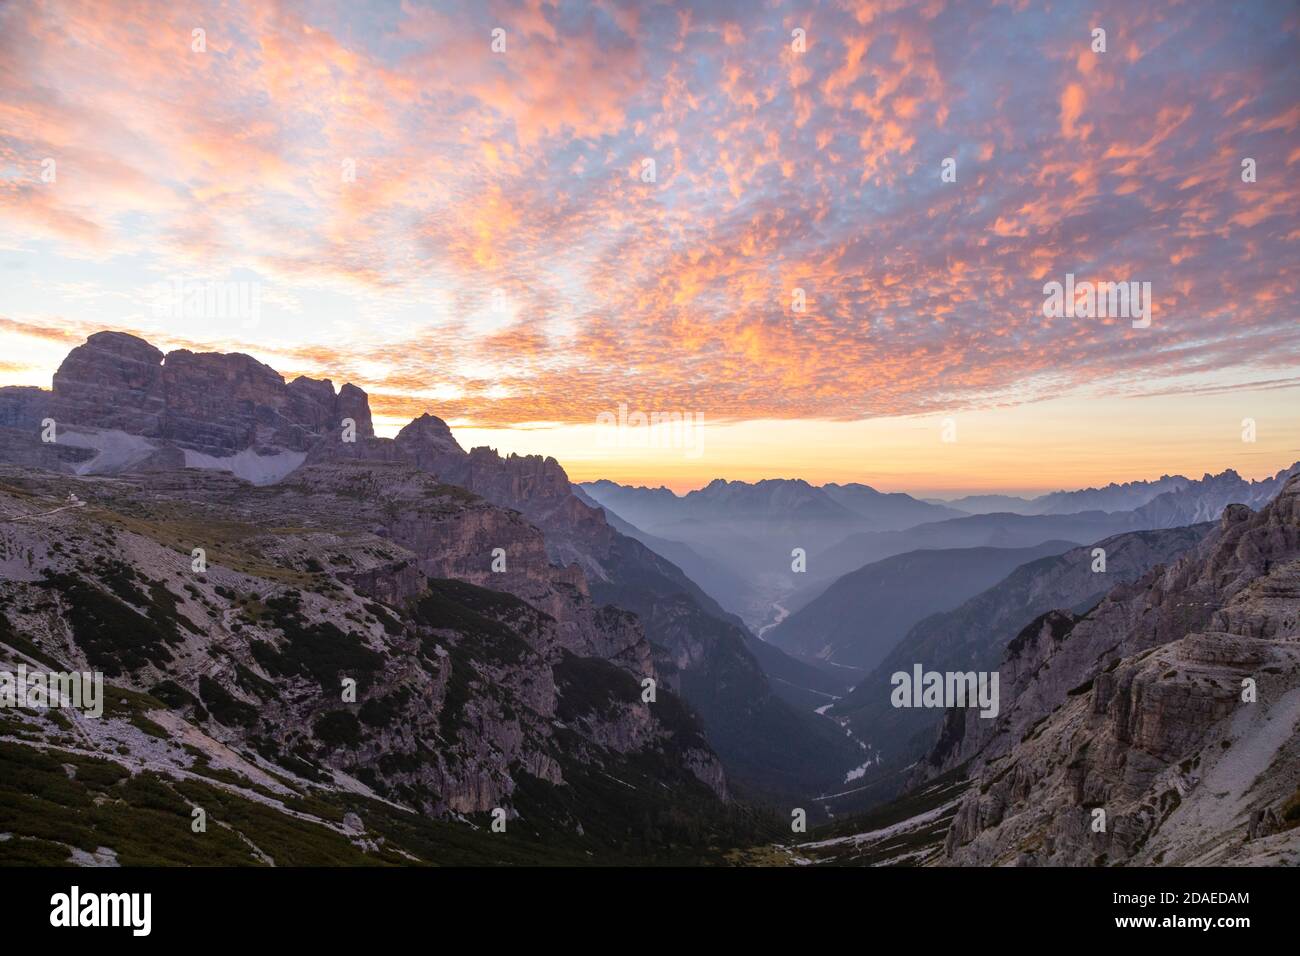 Erhöhter Blick auf das Ansiei-Tal bei Sonnenaufgang mit einem bunten Himmel, Dolomiten, Auronzo di Cadore, Provinz Belluno, Venetien, Italien, Europa Stockfoto